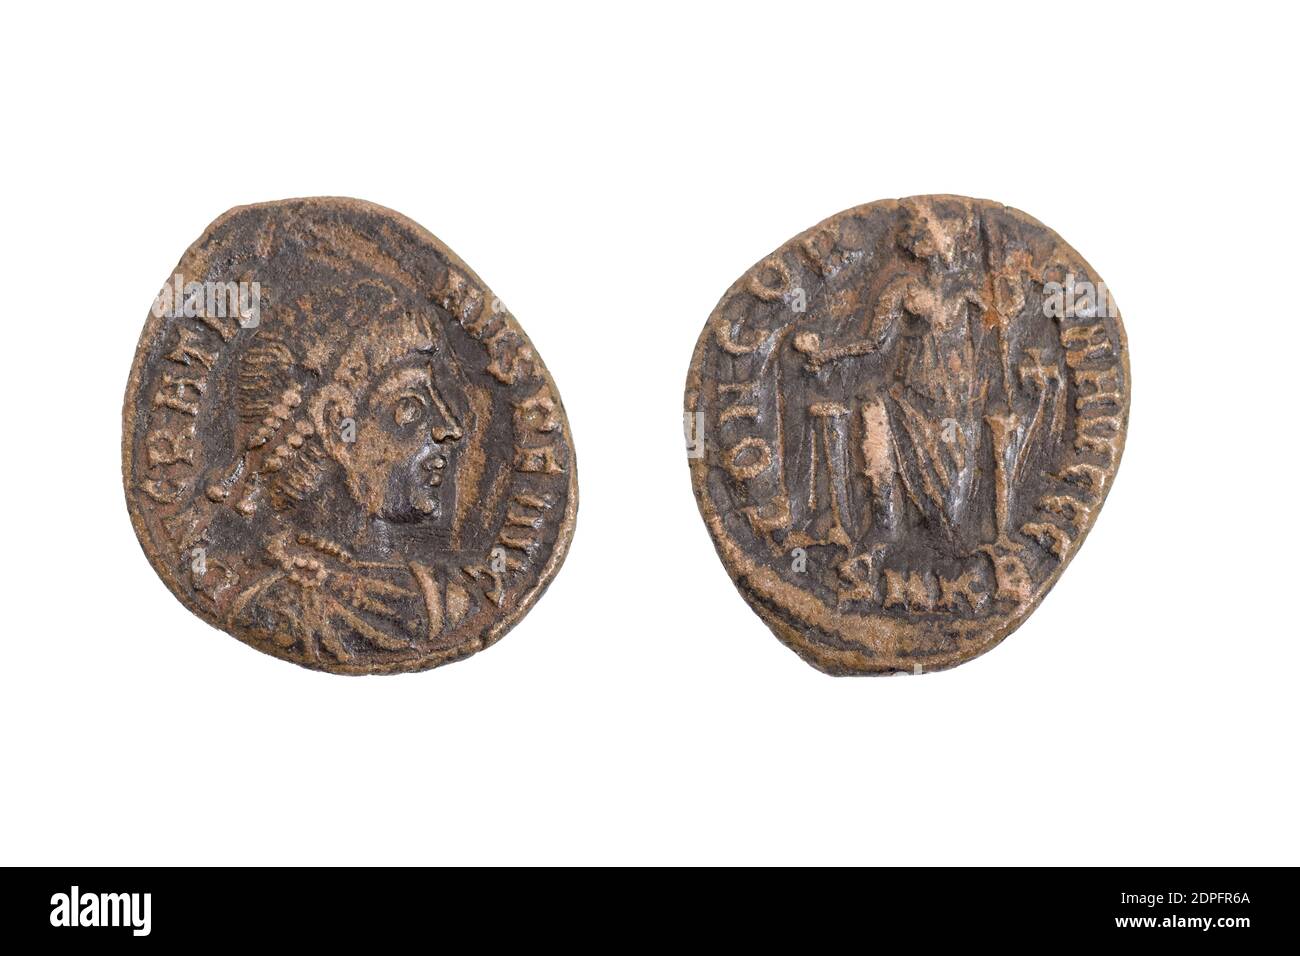 Ancien ancien vintage pièces de monnaie monnaie monnaie monnaie argent Roman bronze Empereur Gratian 367 - 383 (marche arrière) Empereur assis sur le globe de retenue du trône Banque D'Images